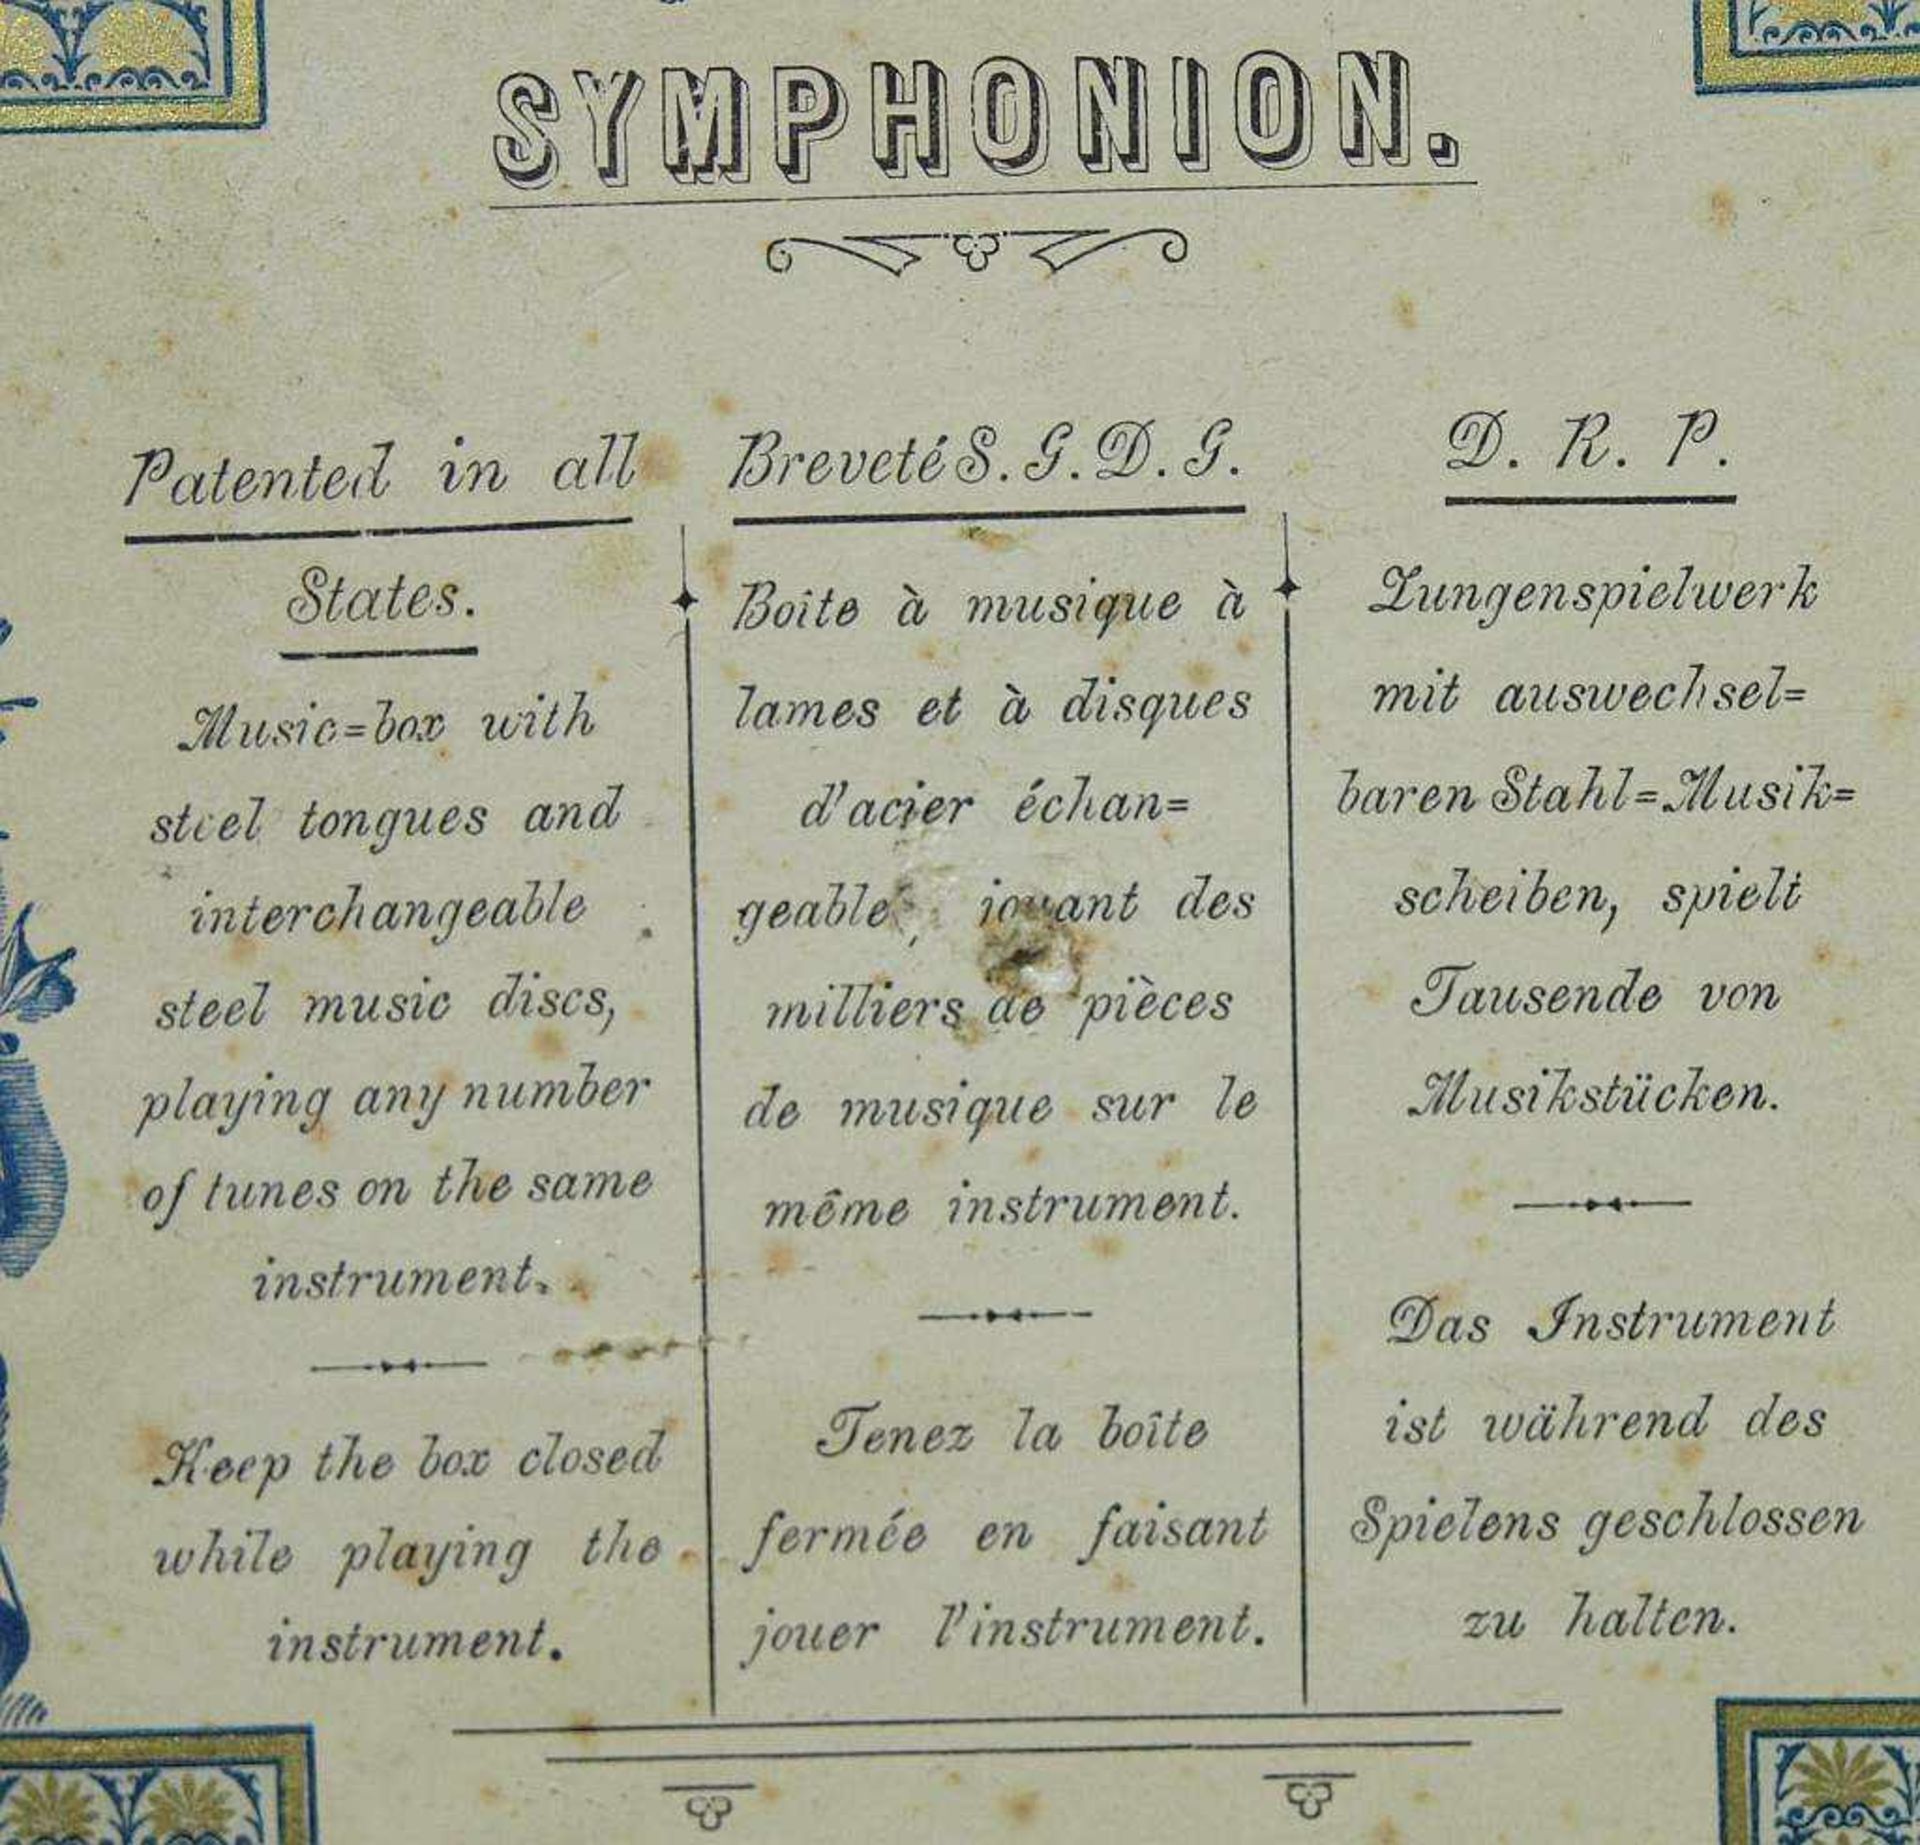 Lochplatten-Spieluhr. Lochplatten-Spieluhr. Symphonium Breveté Patent. Ende 19. Jahrhundert. - Bild 4 aus 7